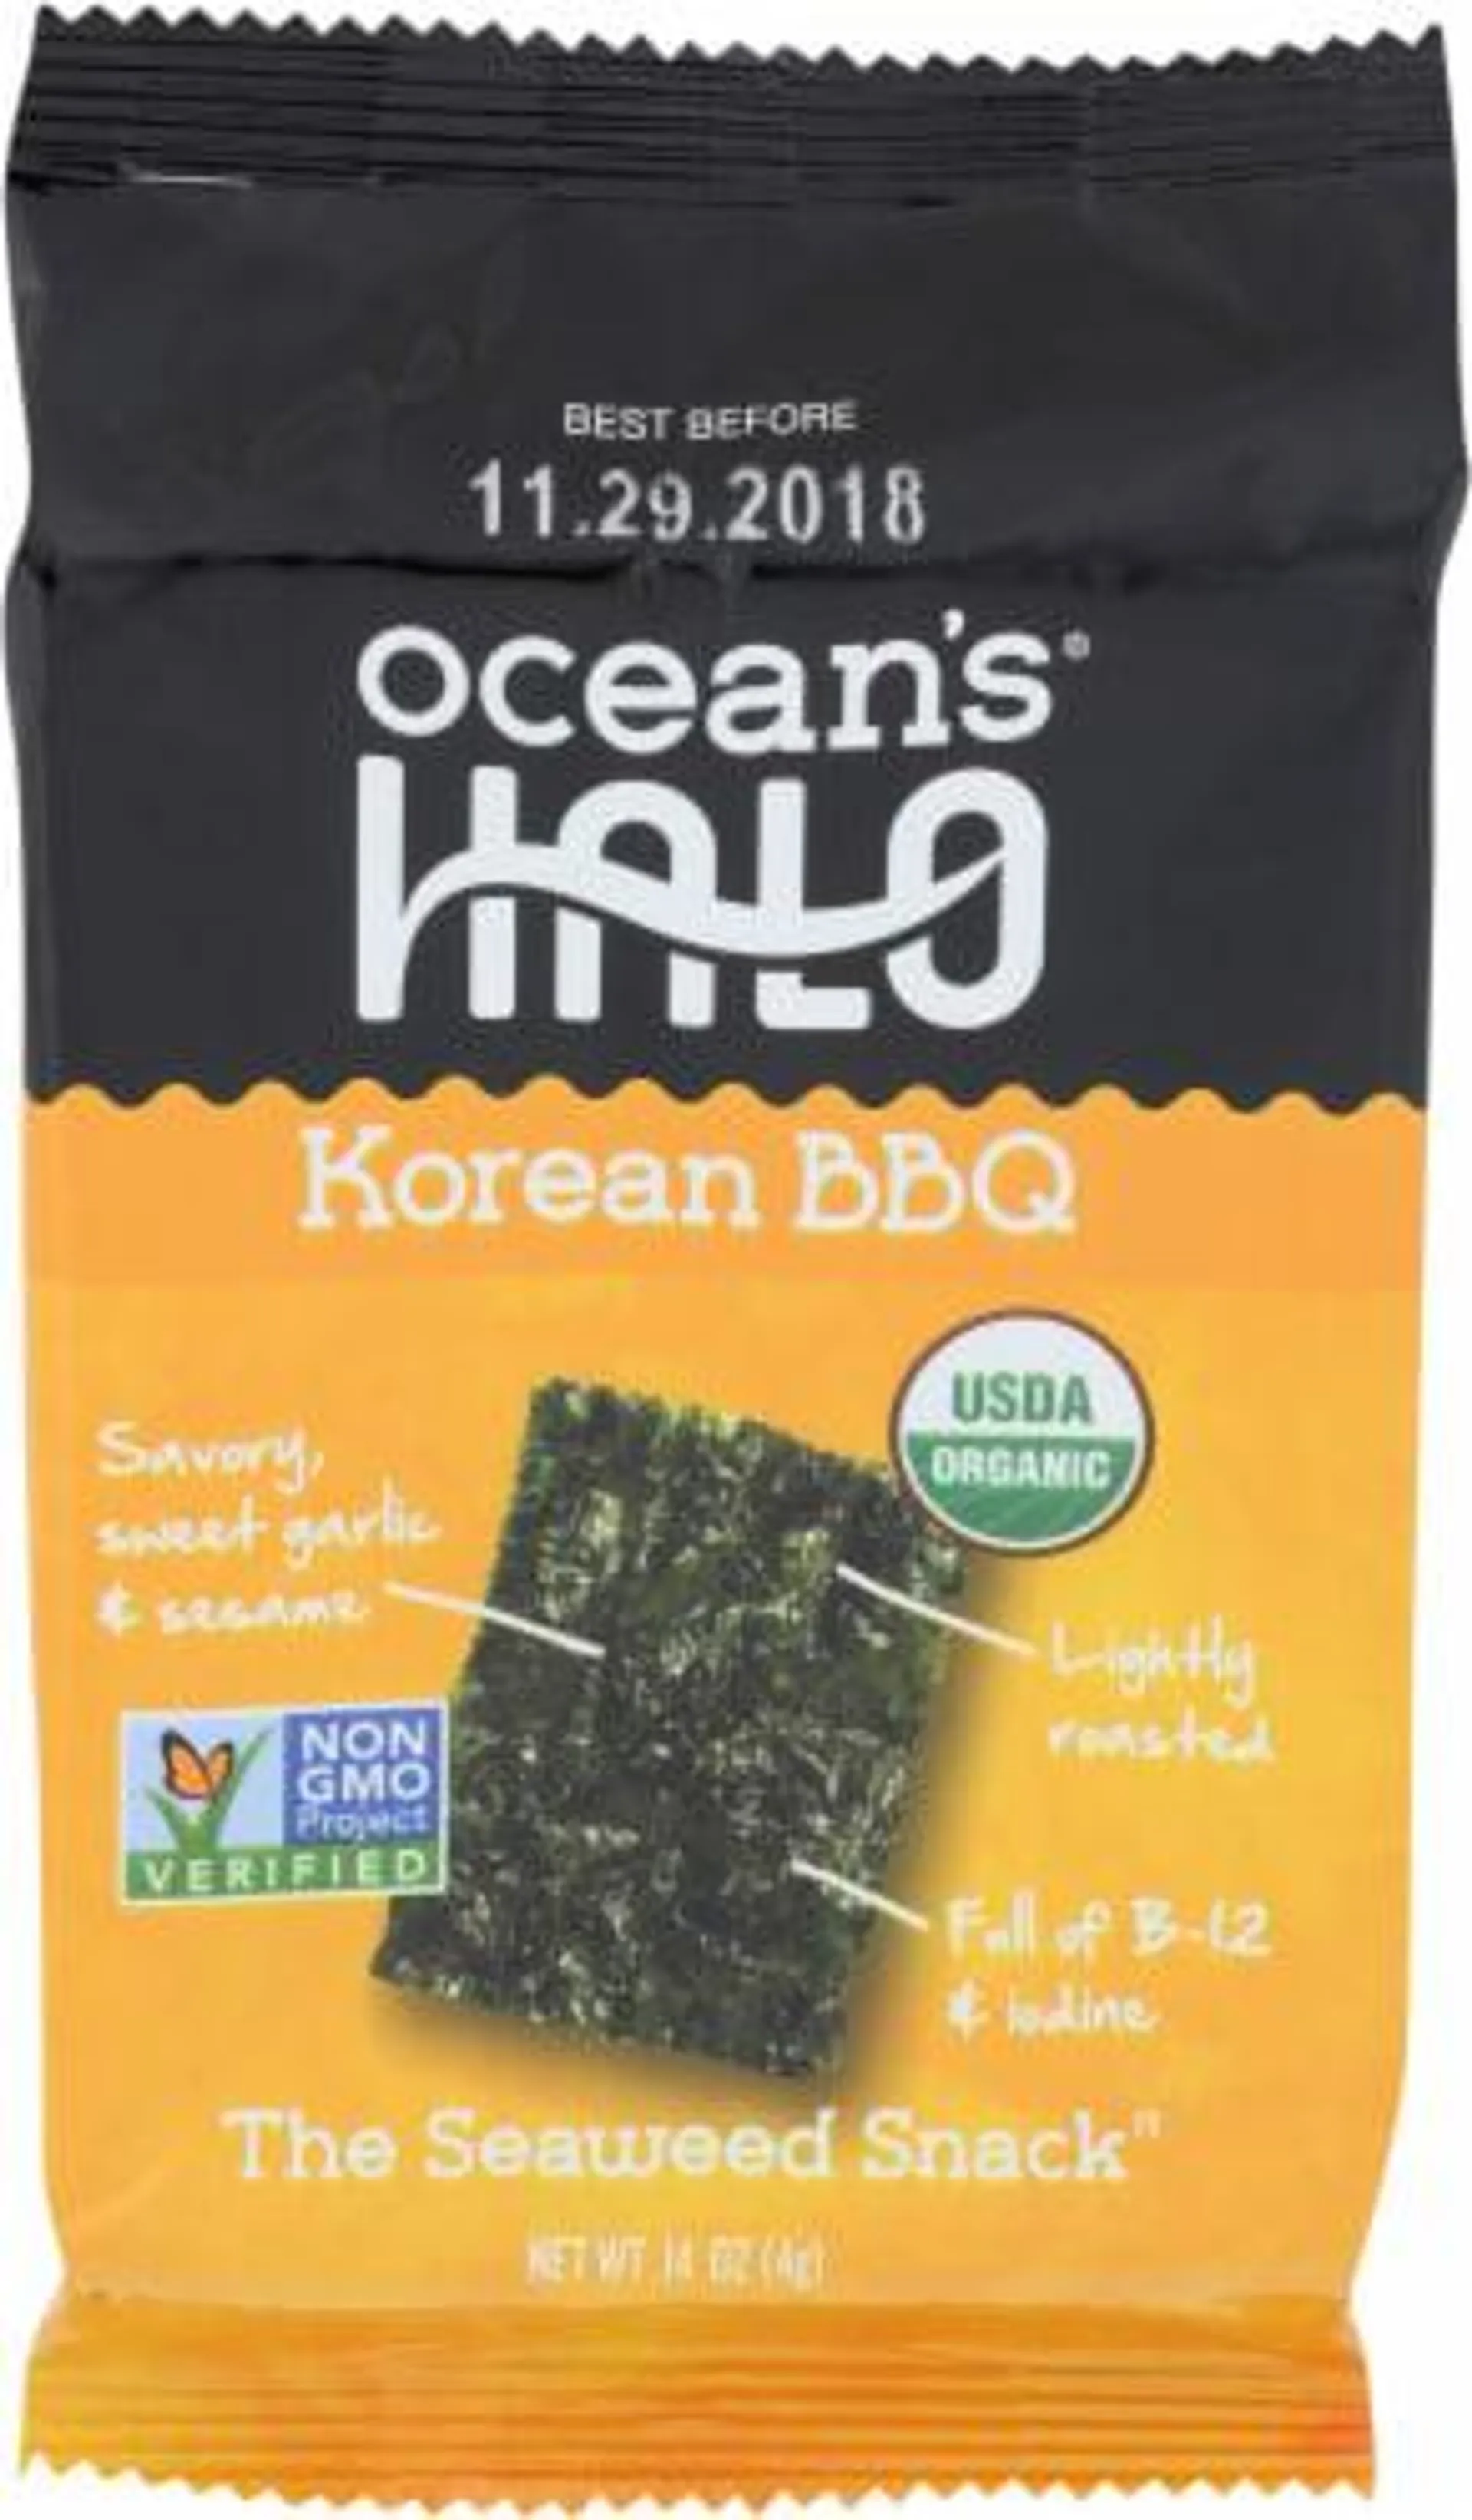 Ocean's Halo Korean BBQ Seaweed Snack